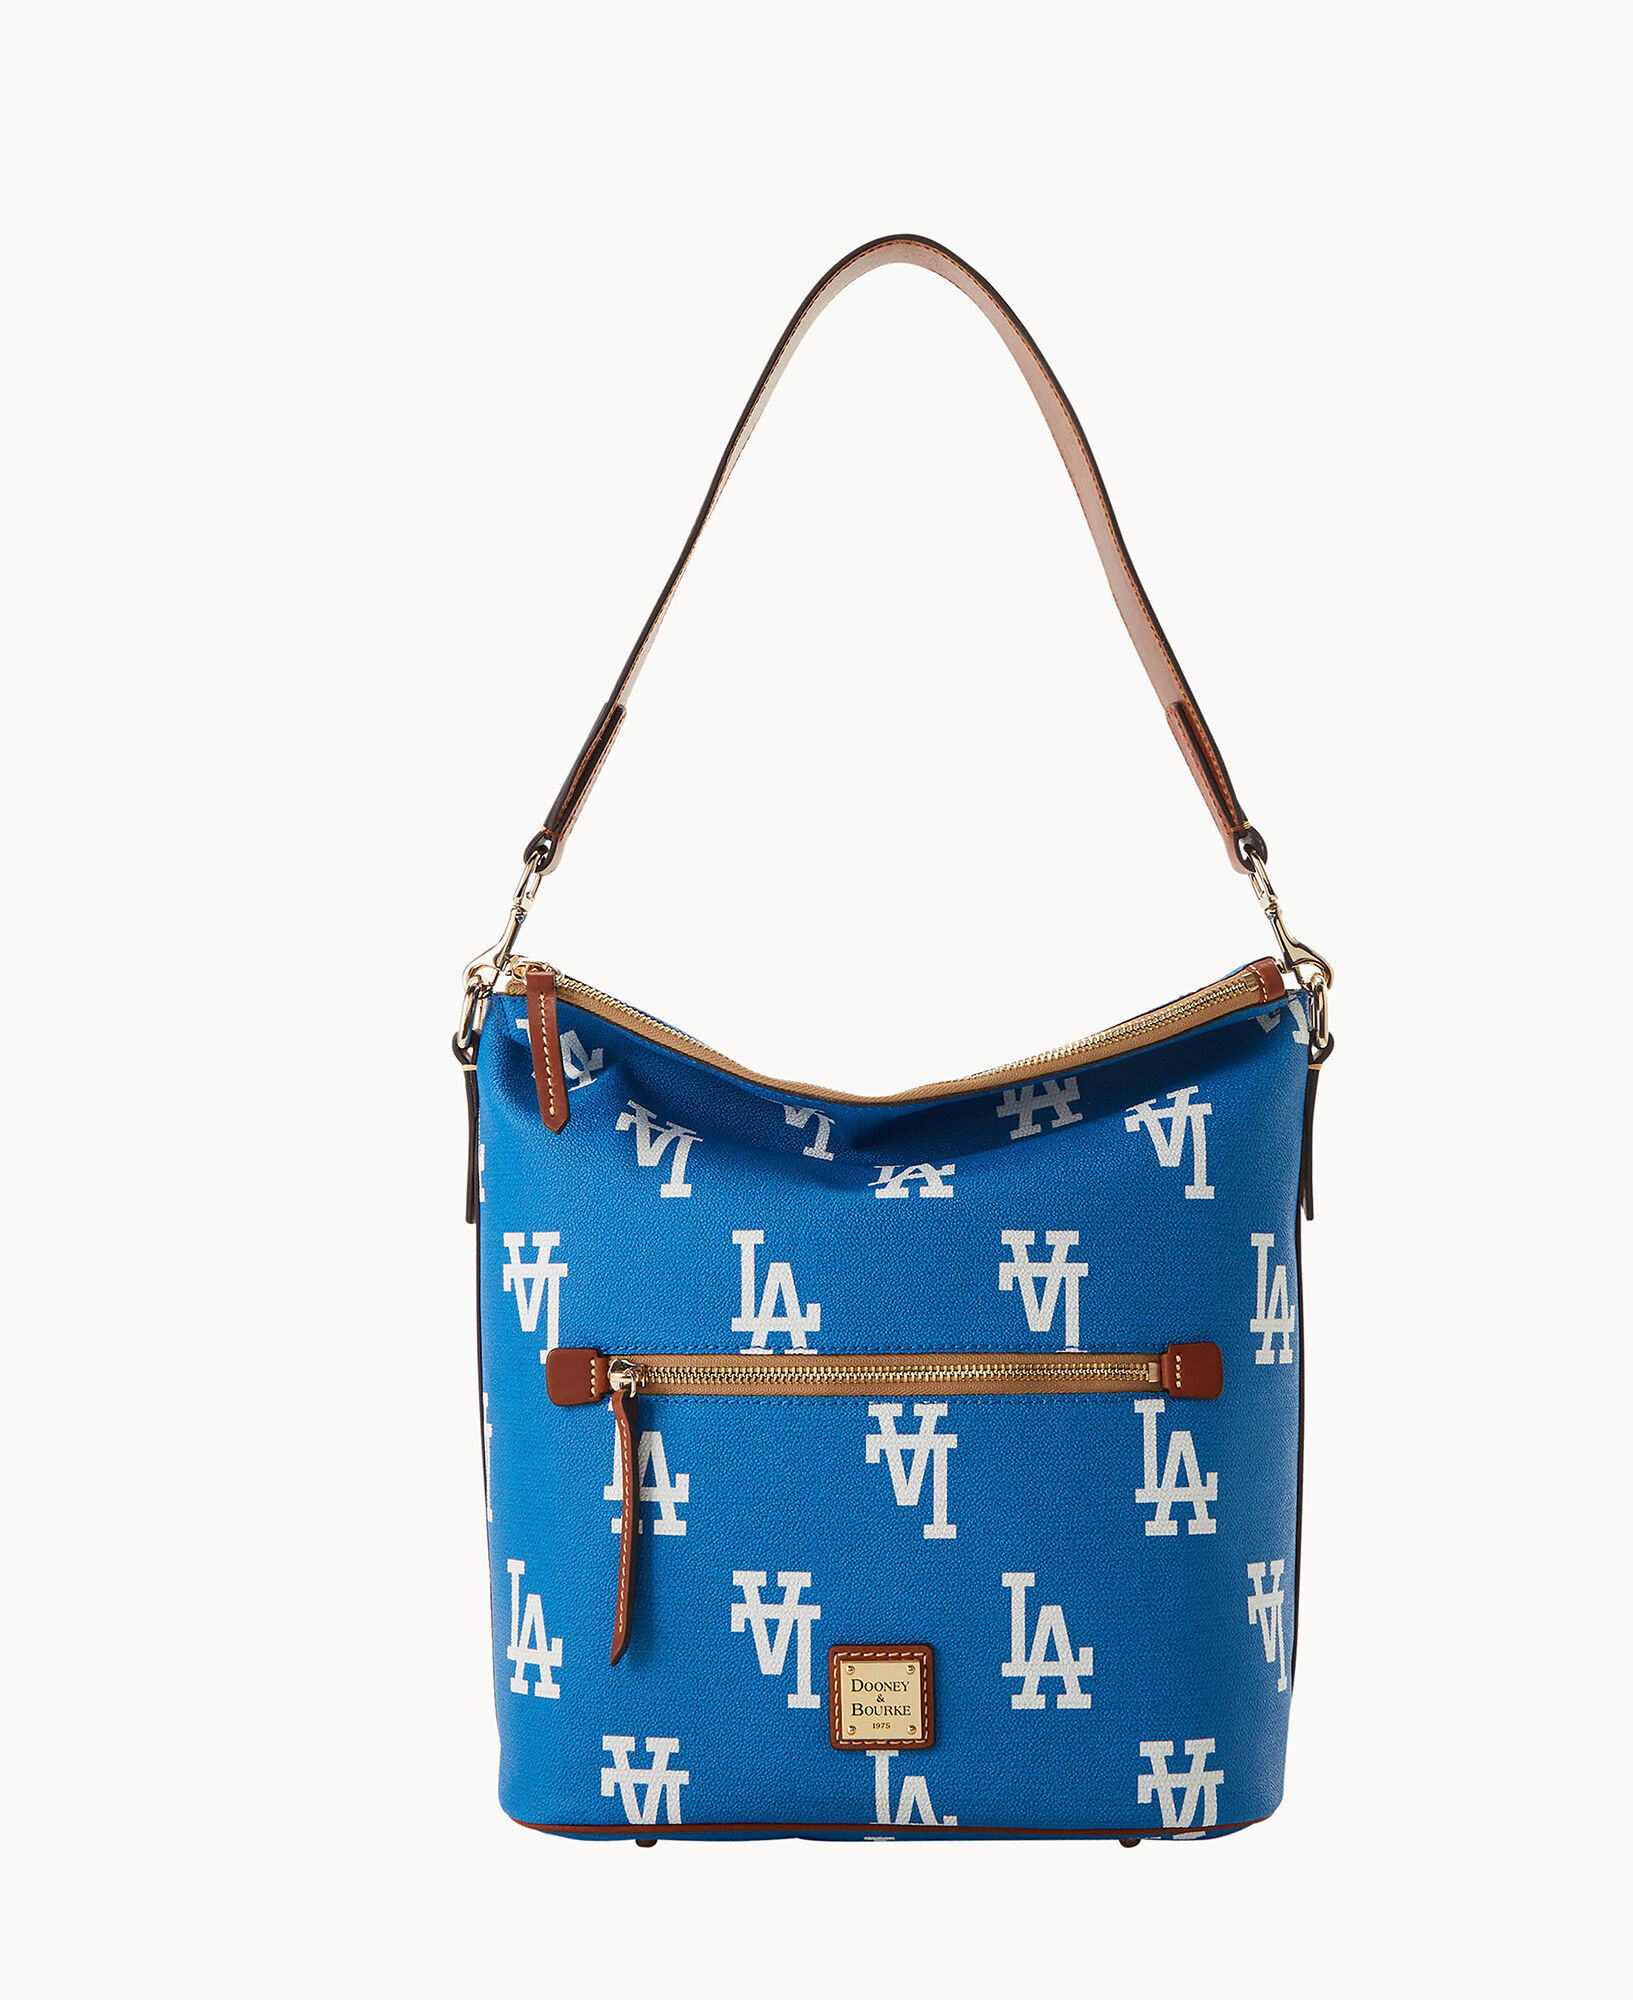 Dooney & Bourke Los Angeles Dodgers Large Sac Shoulder Bag